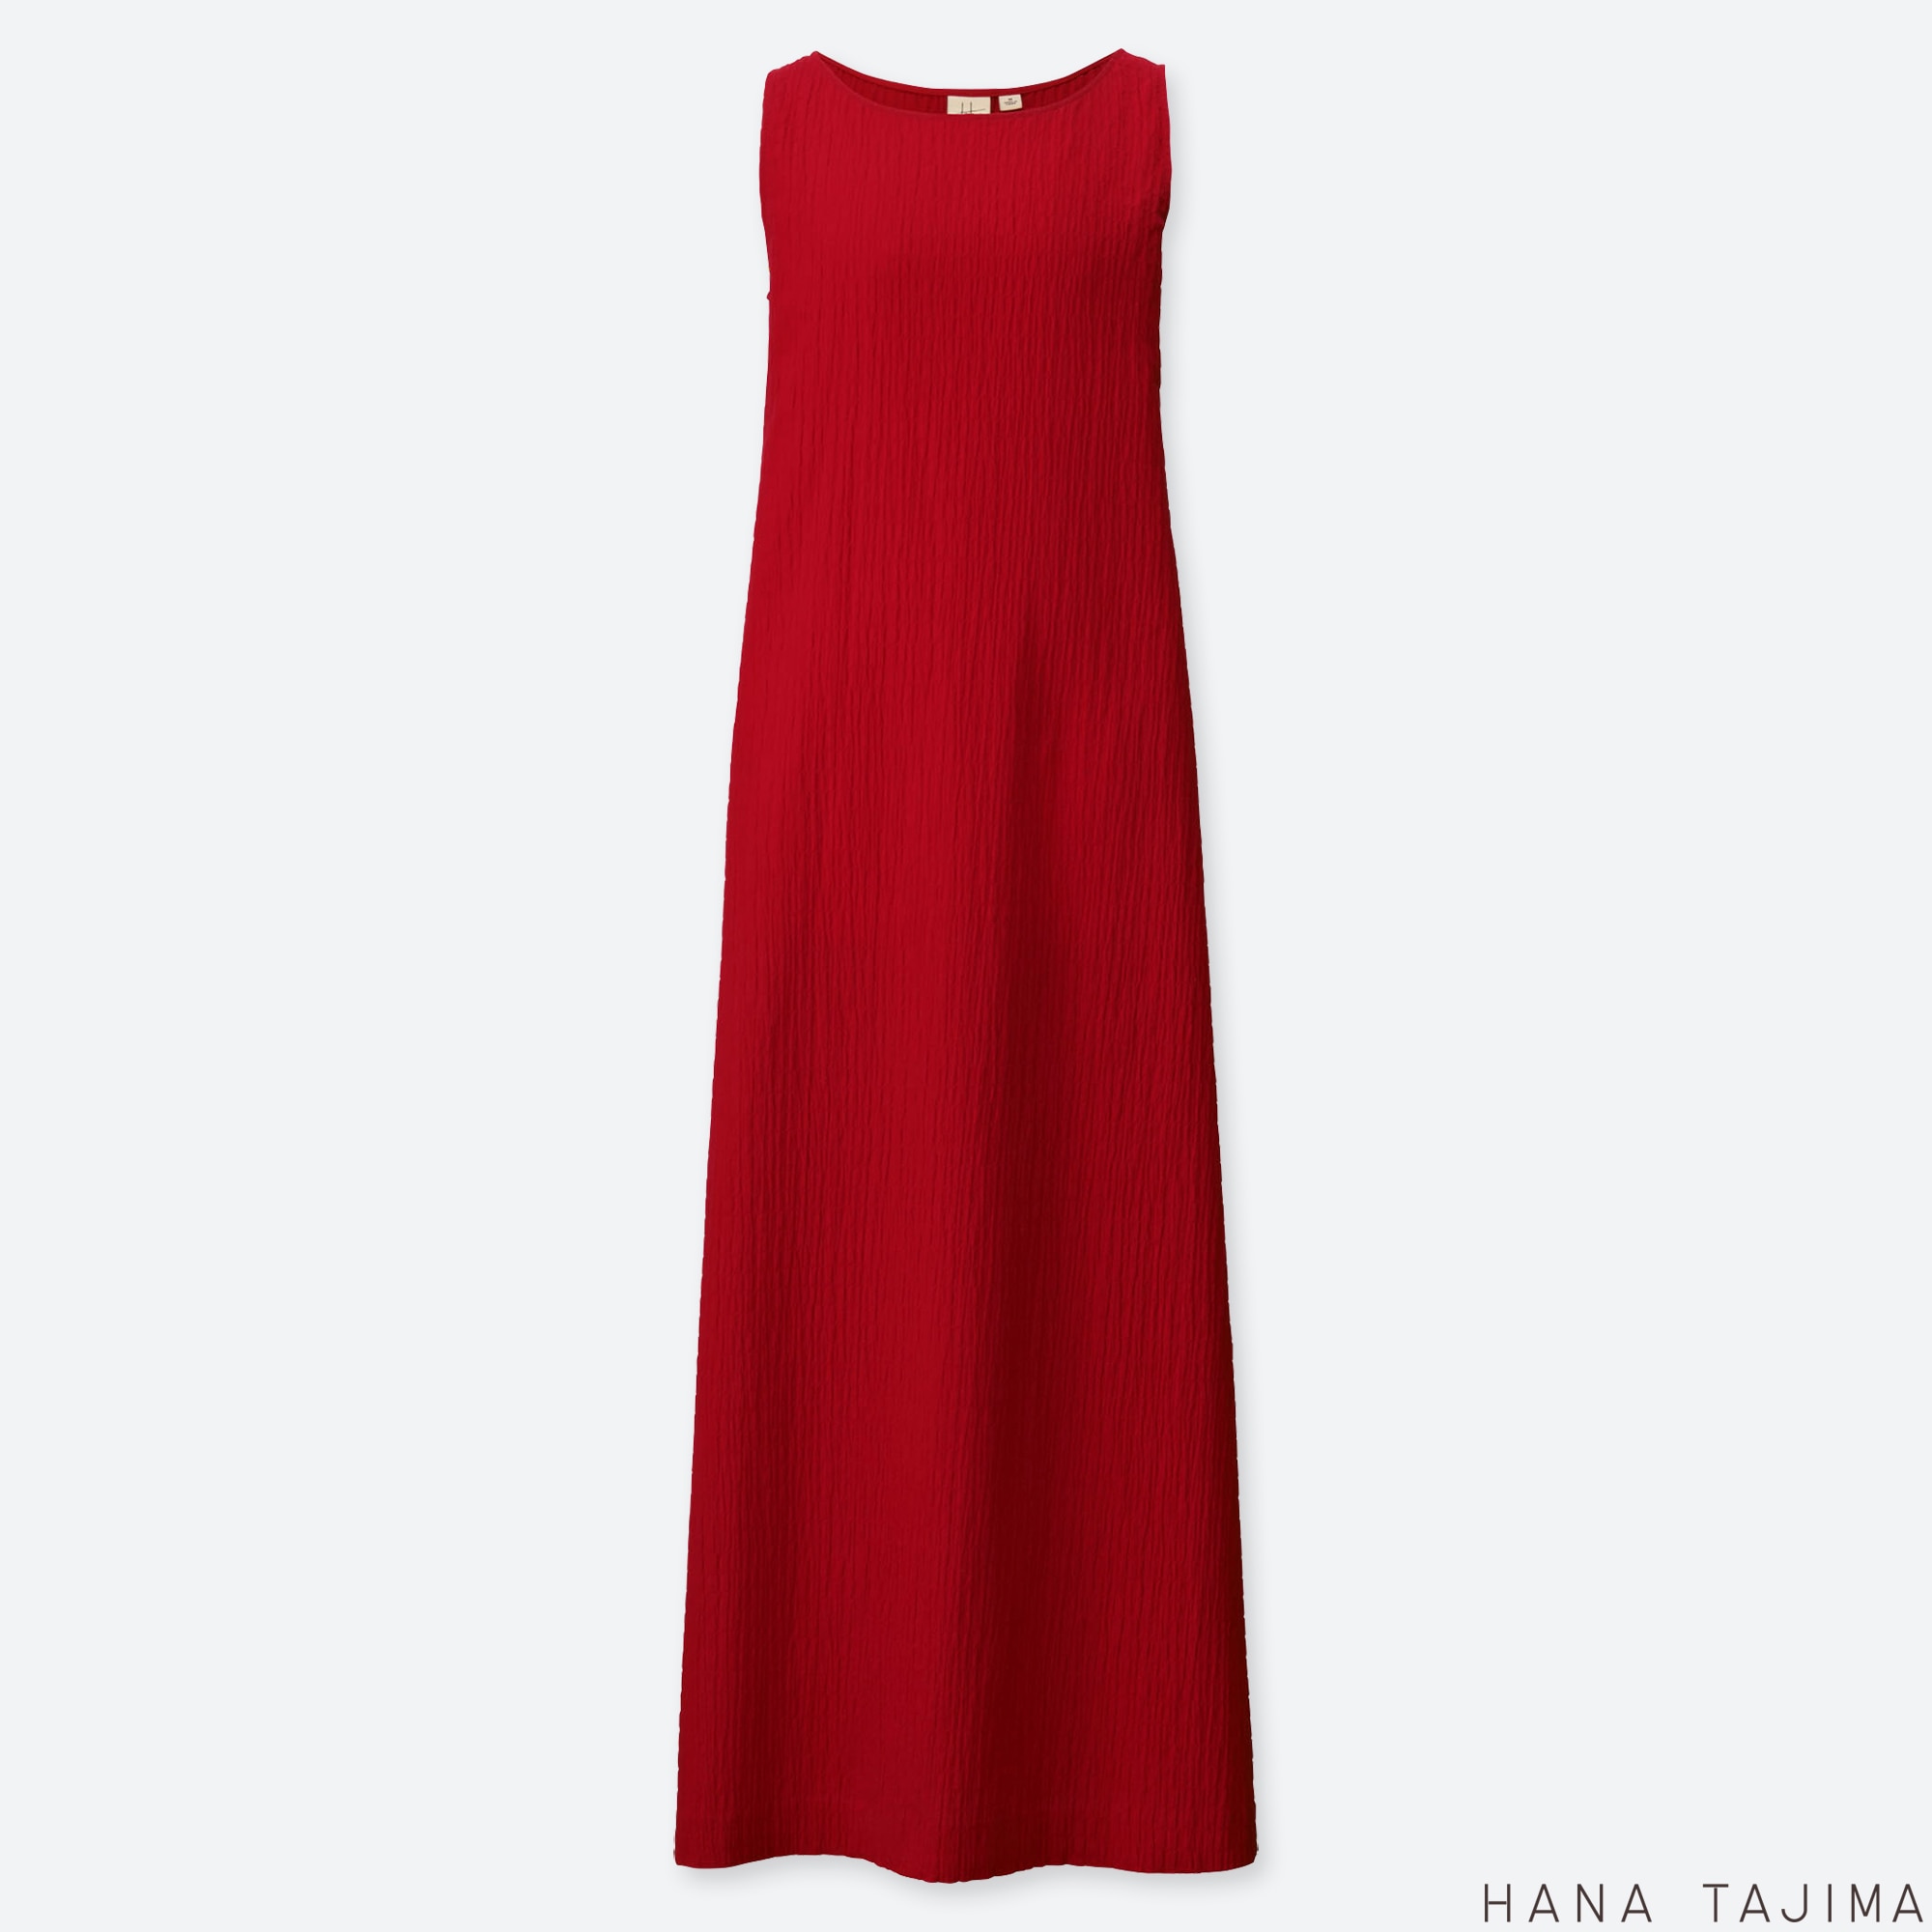 uniqlo red dress